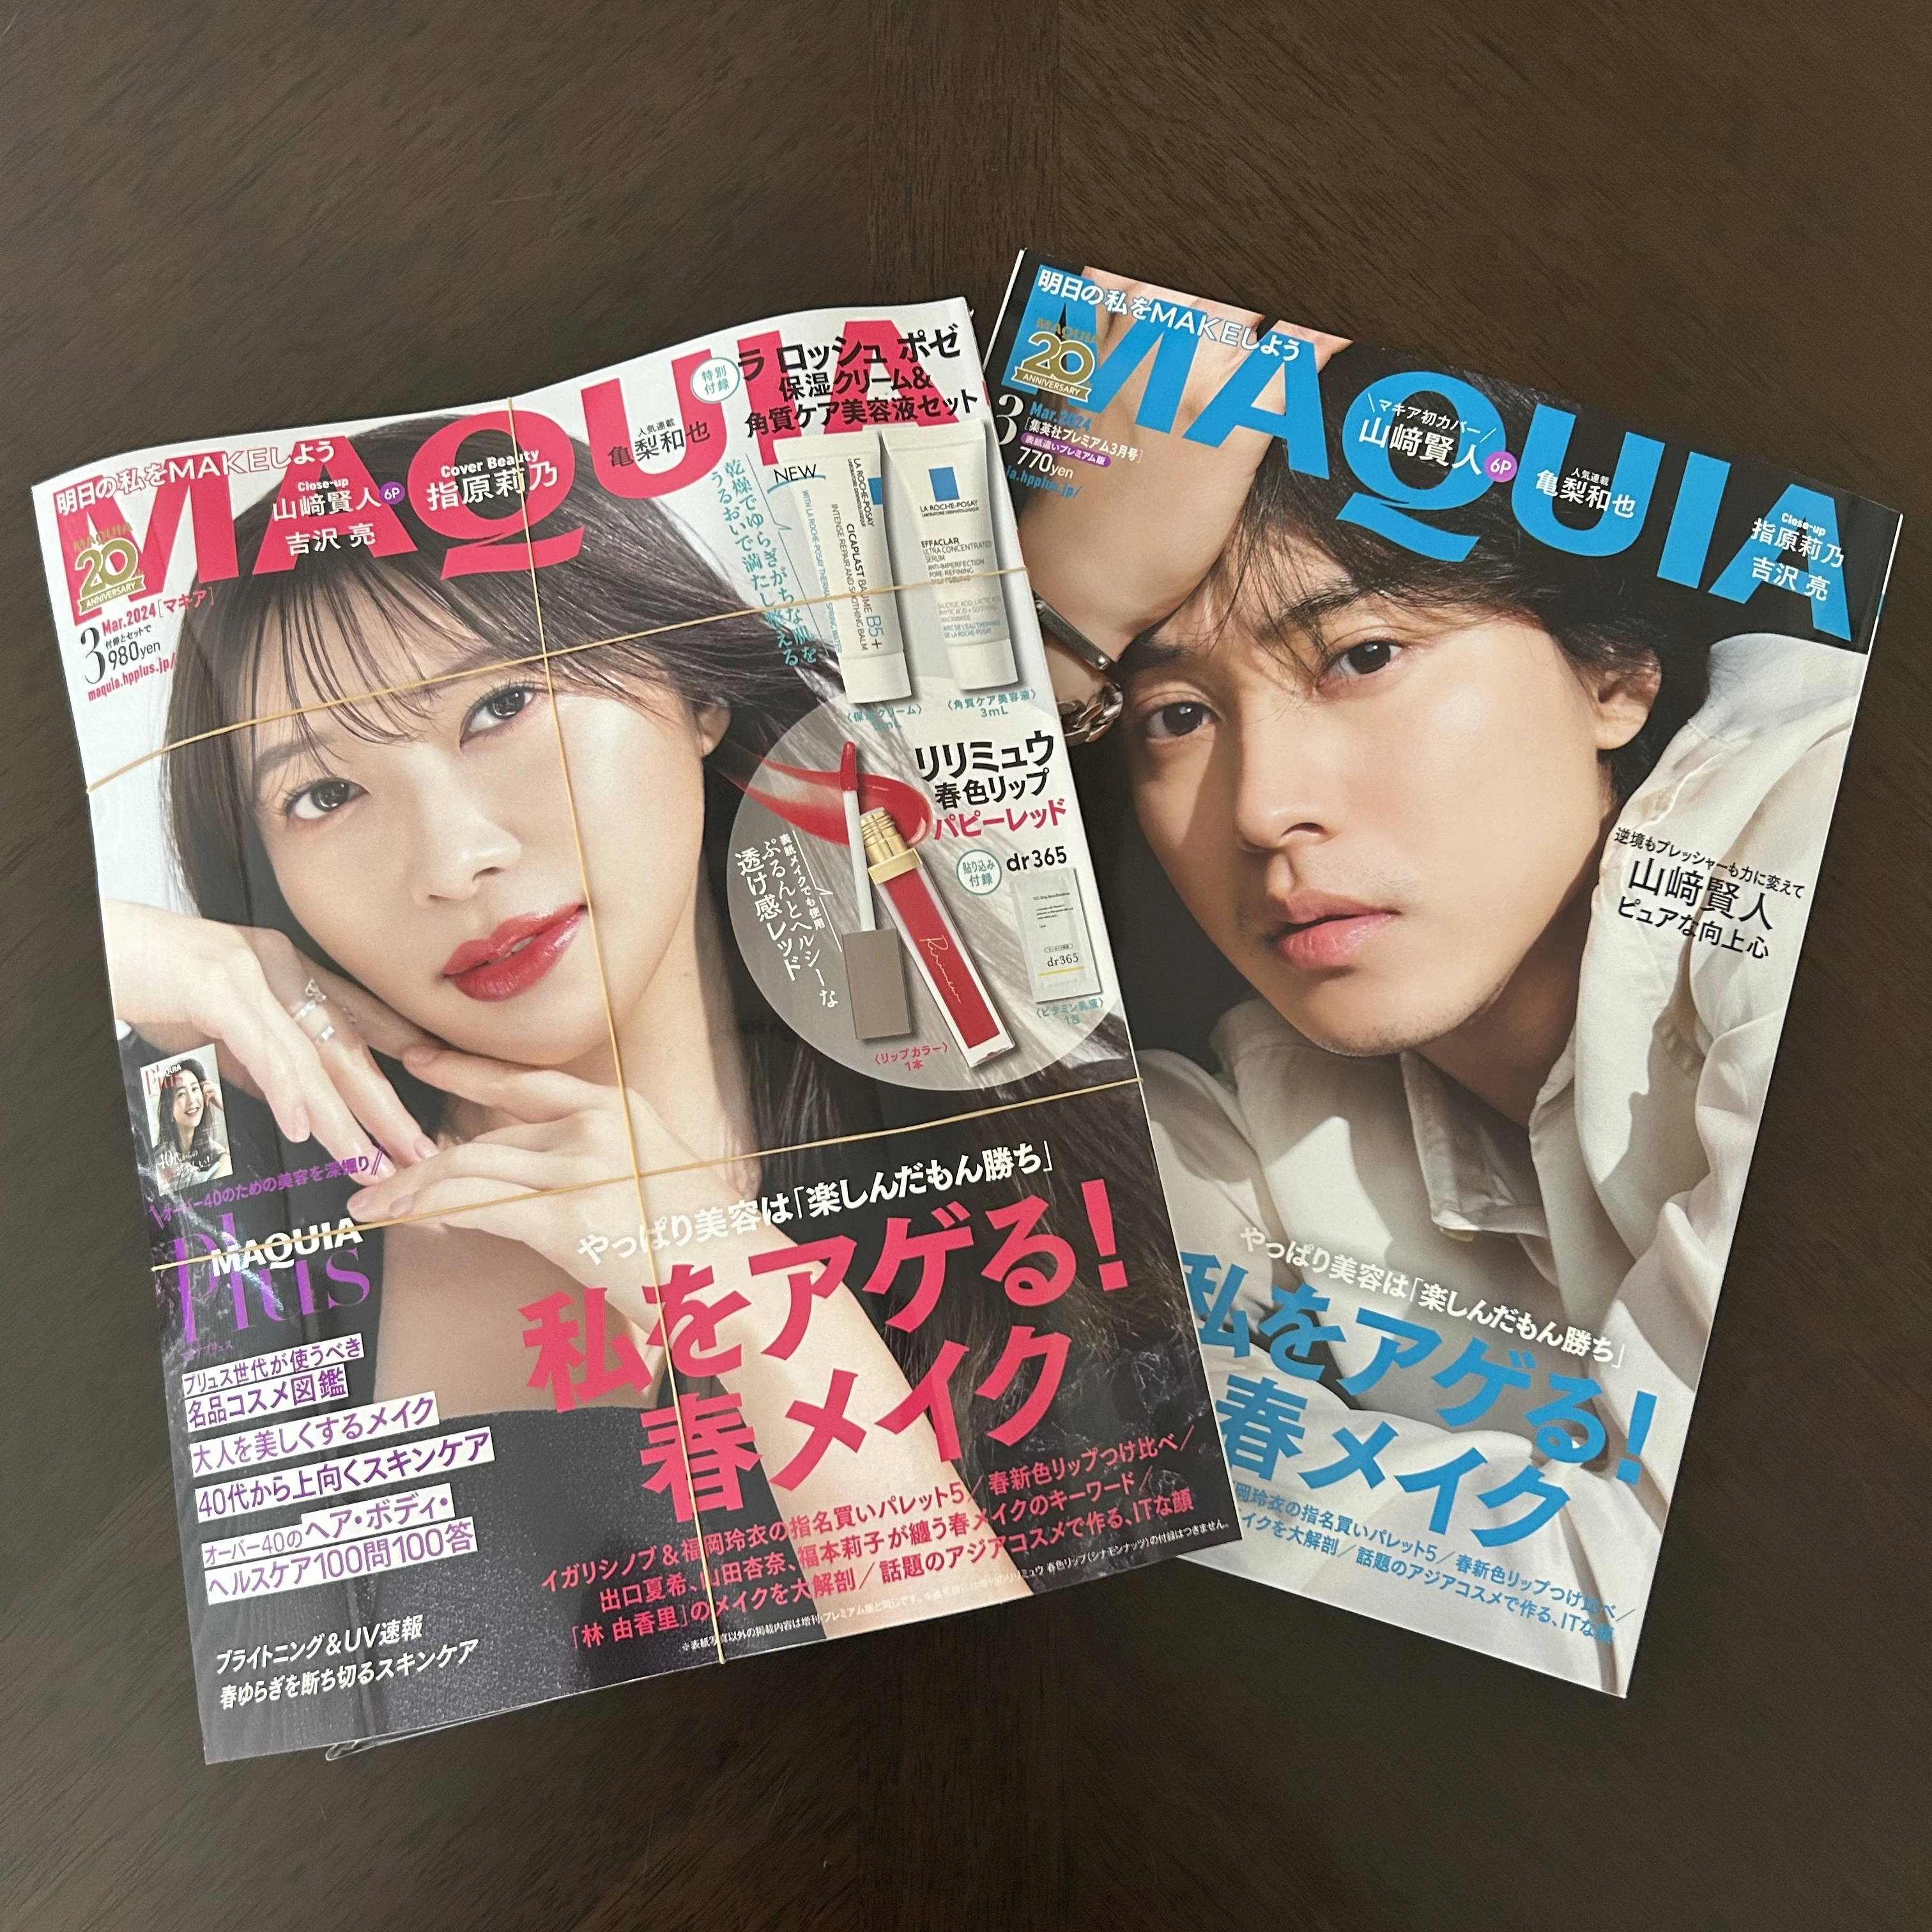 美容雑誌、MAQUIA、コスメ